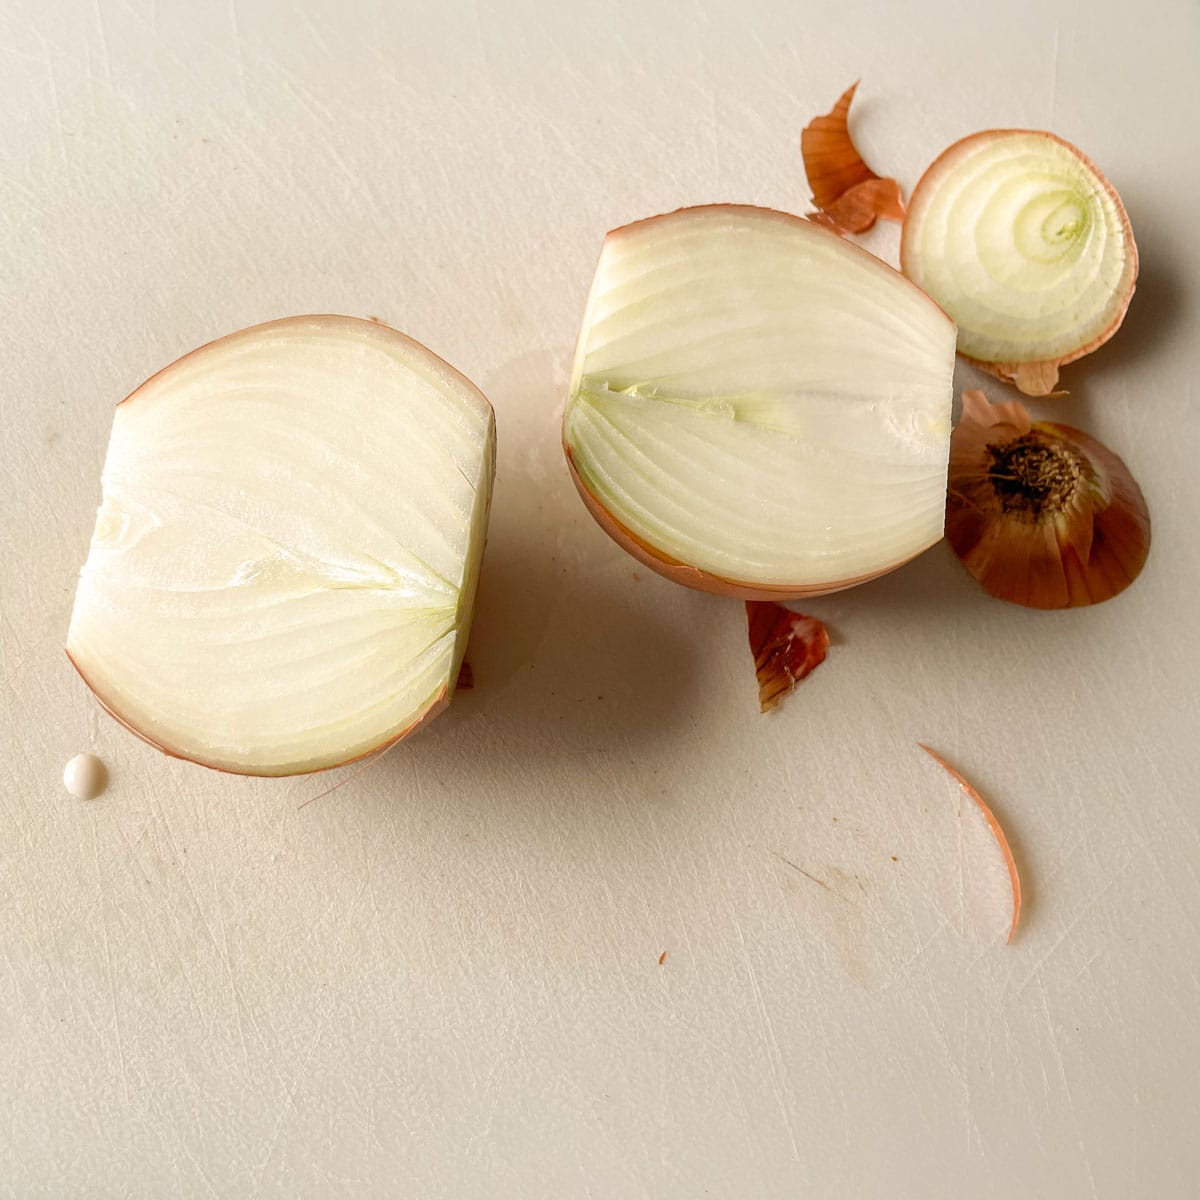 An onion is cut in half.